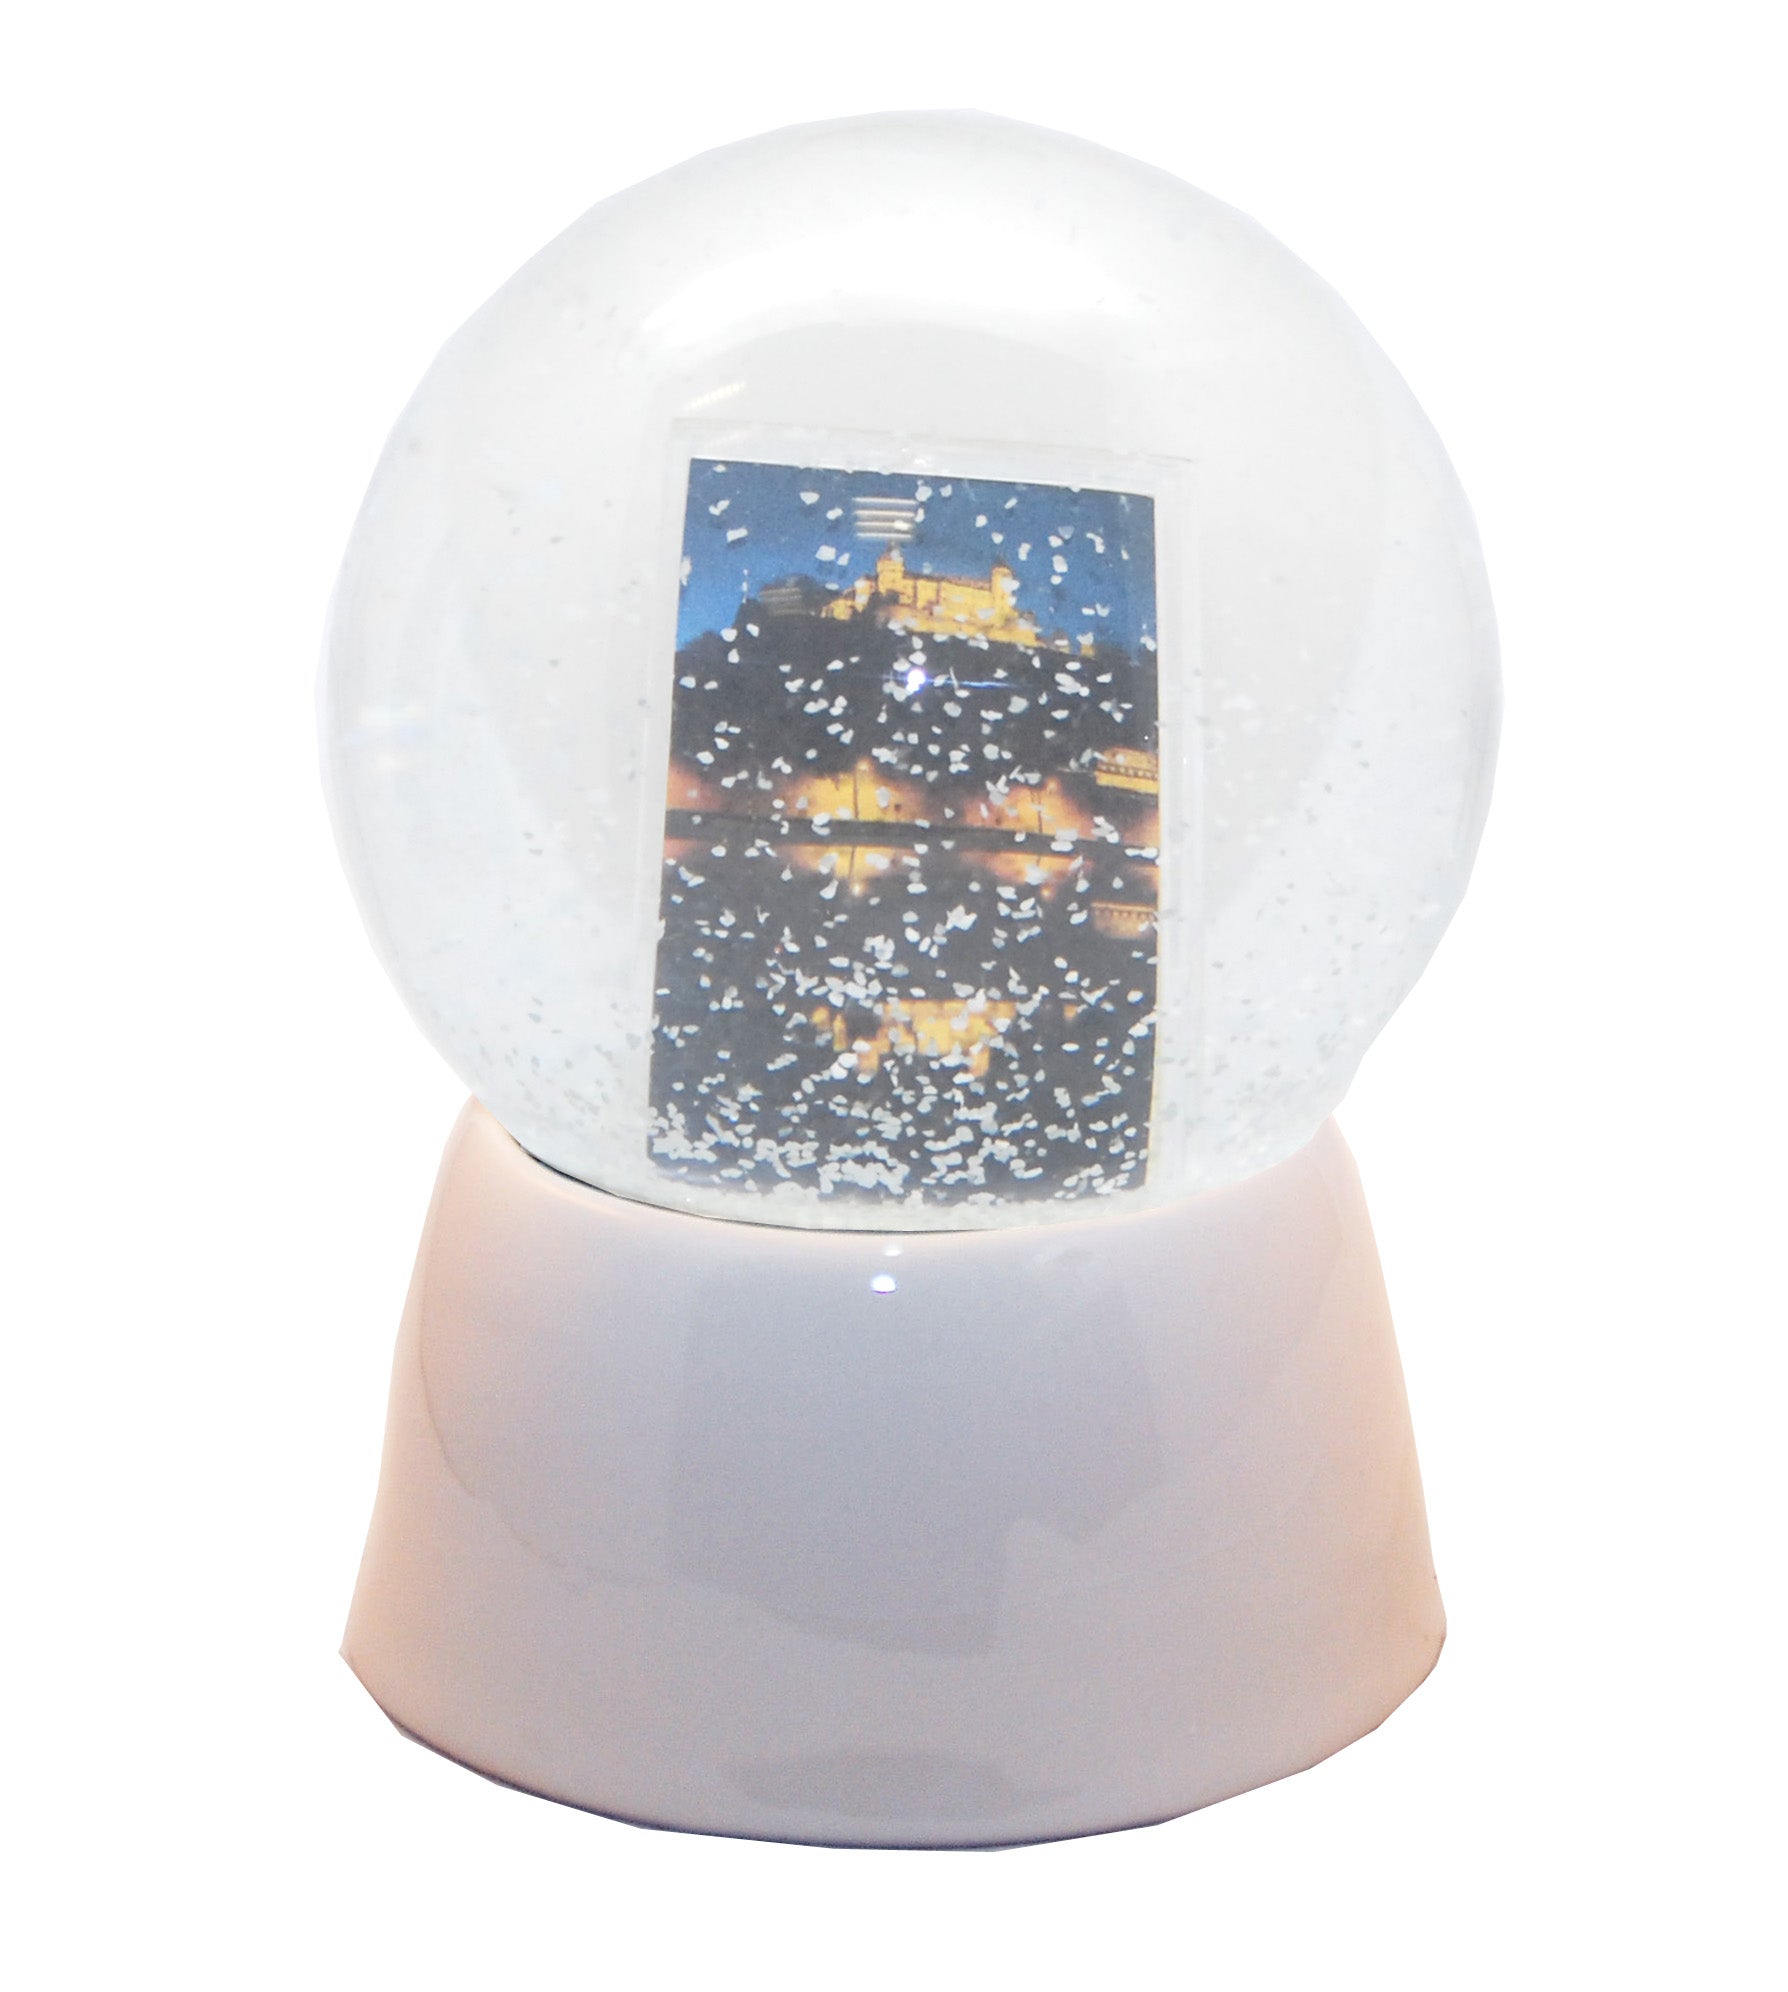 Bastelset mit 100mm Glas für DIY-Schneekugel mit Fotoeinsatz mit Porzellan-Sockel weiß - Schneekugelhaus